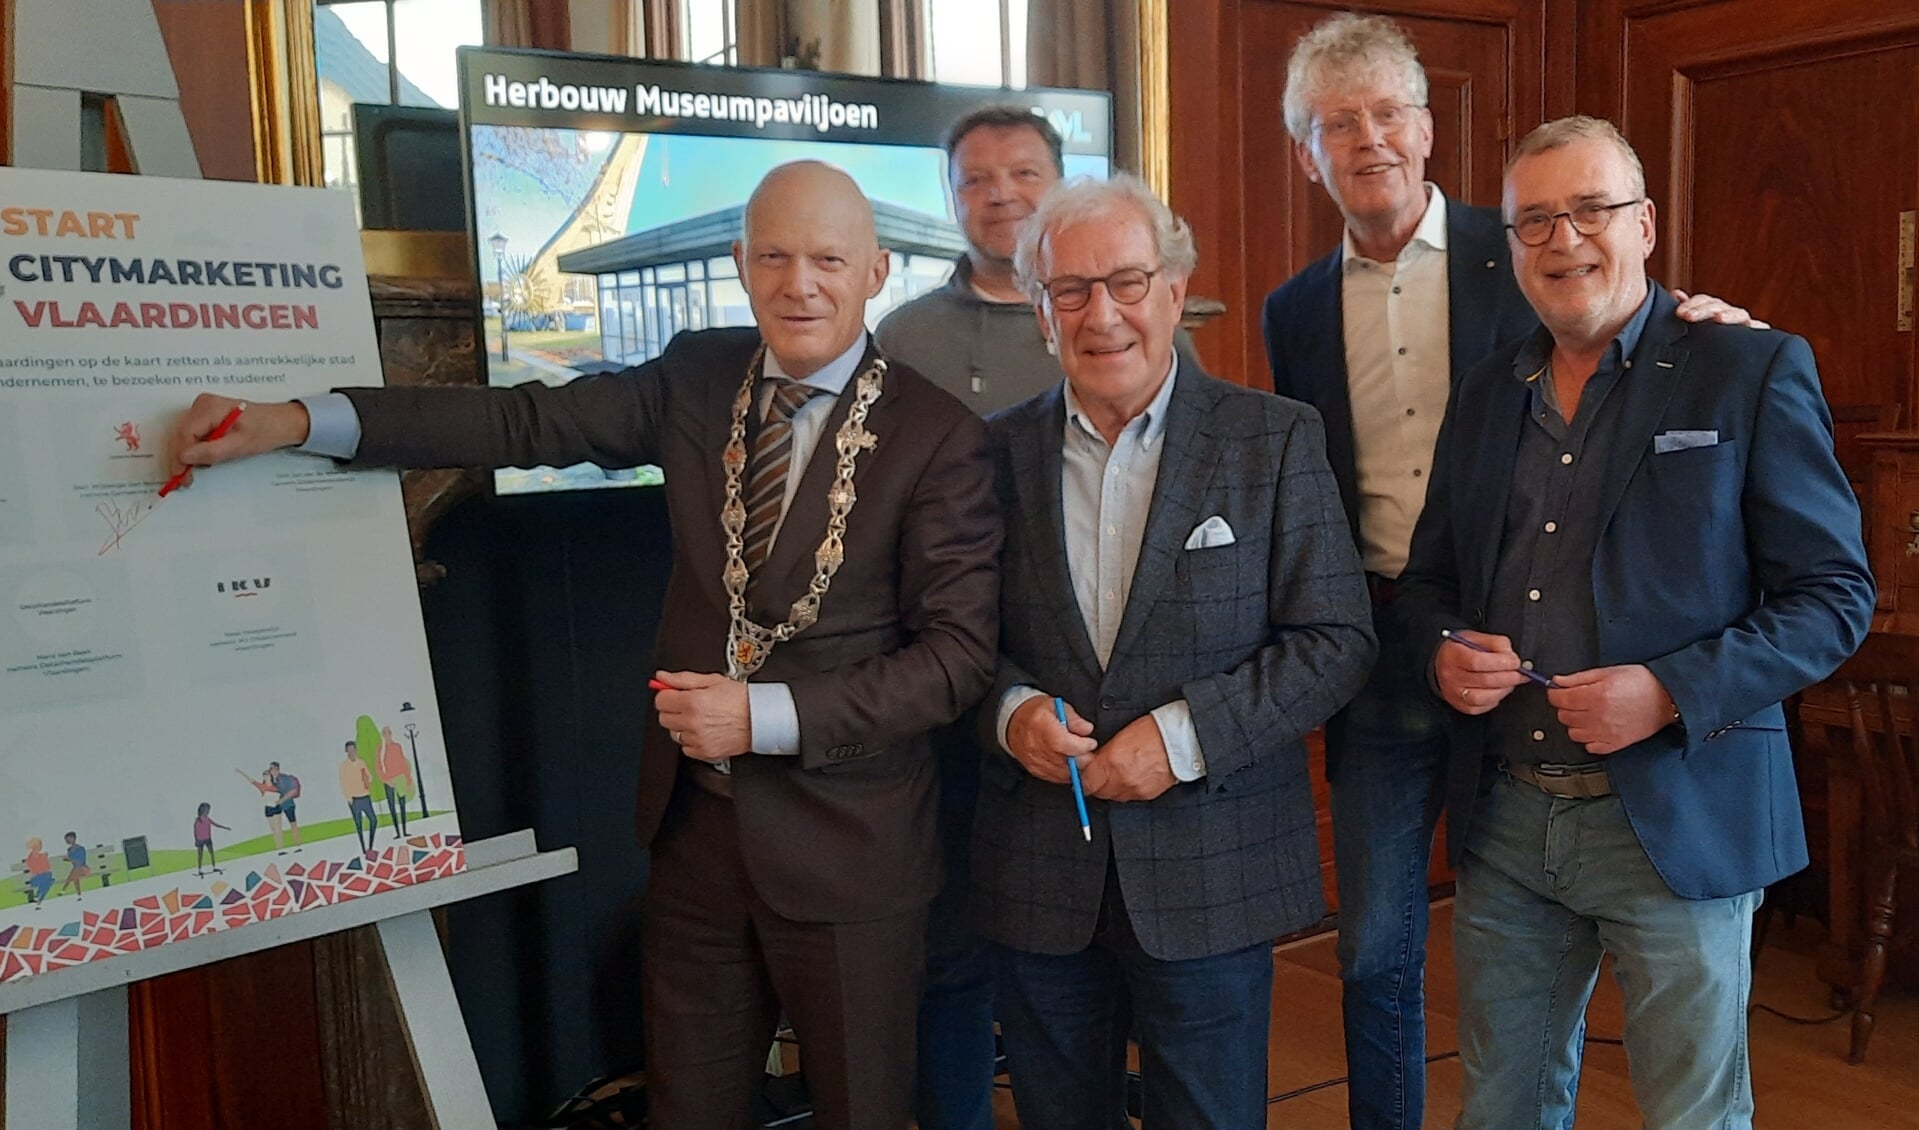 Gerrit van Toor, kijkt met een blij gezicht staande naast burgemeester Bert Wijbenga, hoe het Citymarketingplan met een handtekening wordt bekrachtig. Op de achtergrond kijken v.l.n.r mee Hewi Hoogendijk, Dirk Jan van de Weerdt en Hans van Beek.